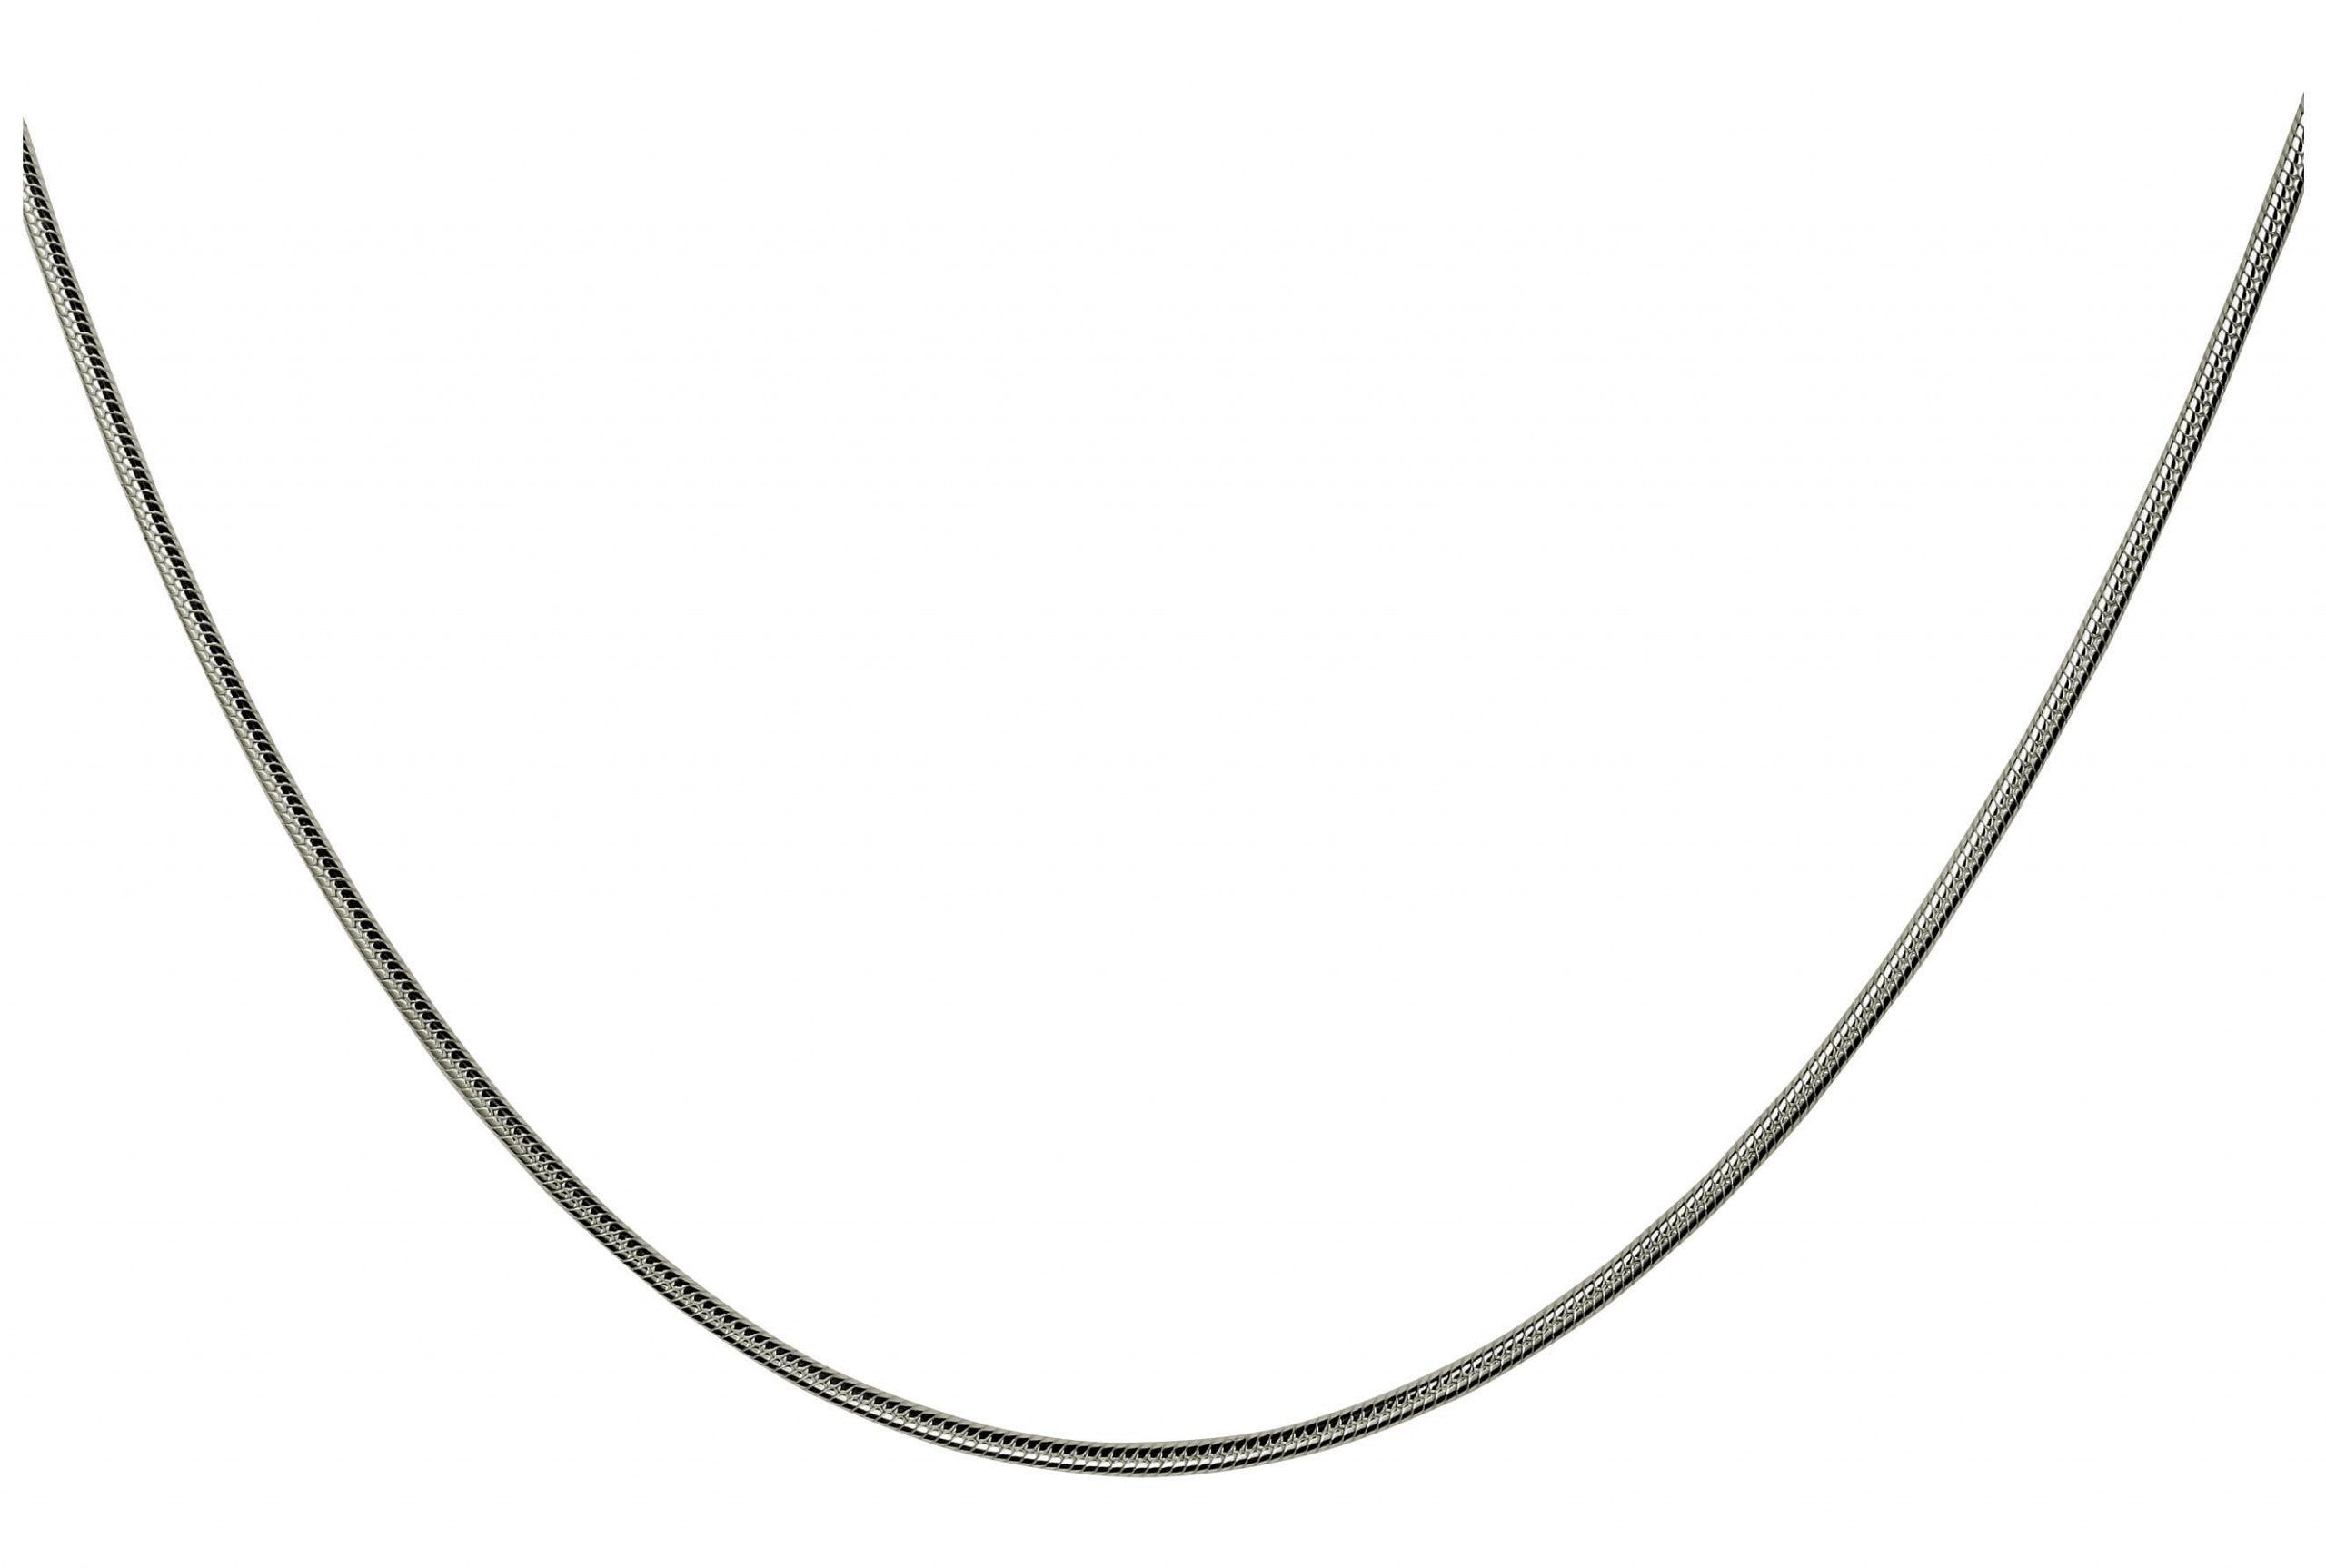 Eine klassische Schlangenkette aus Silber für Damen mit glänzender Oberfläche und einem Karabinerverschluss.